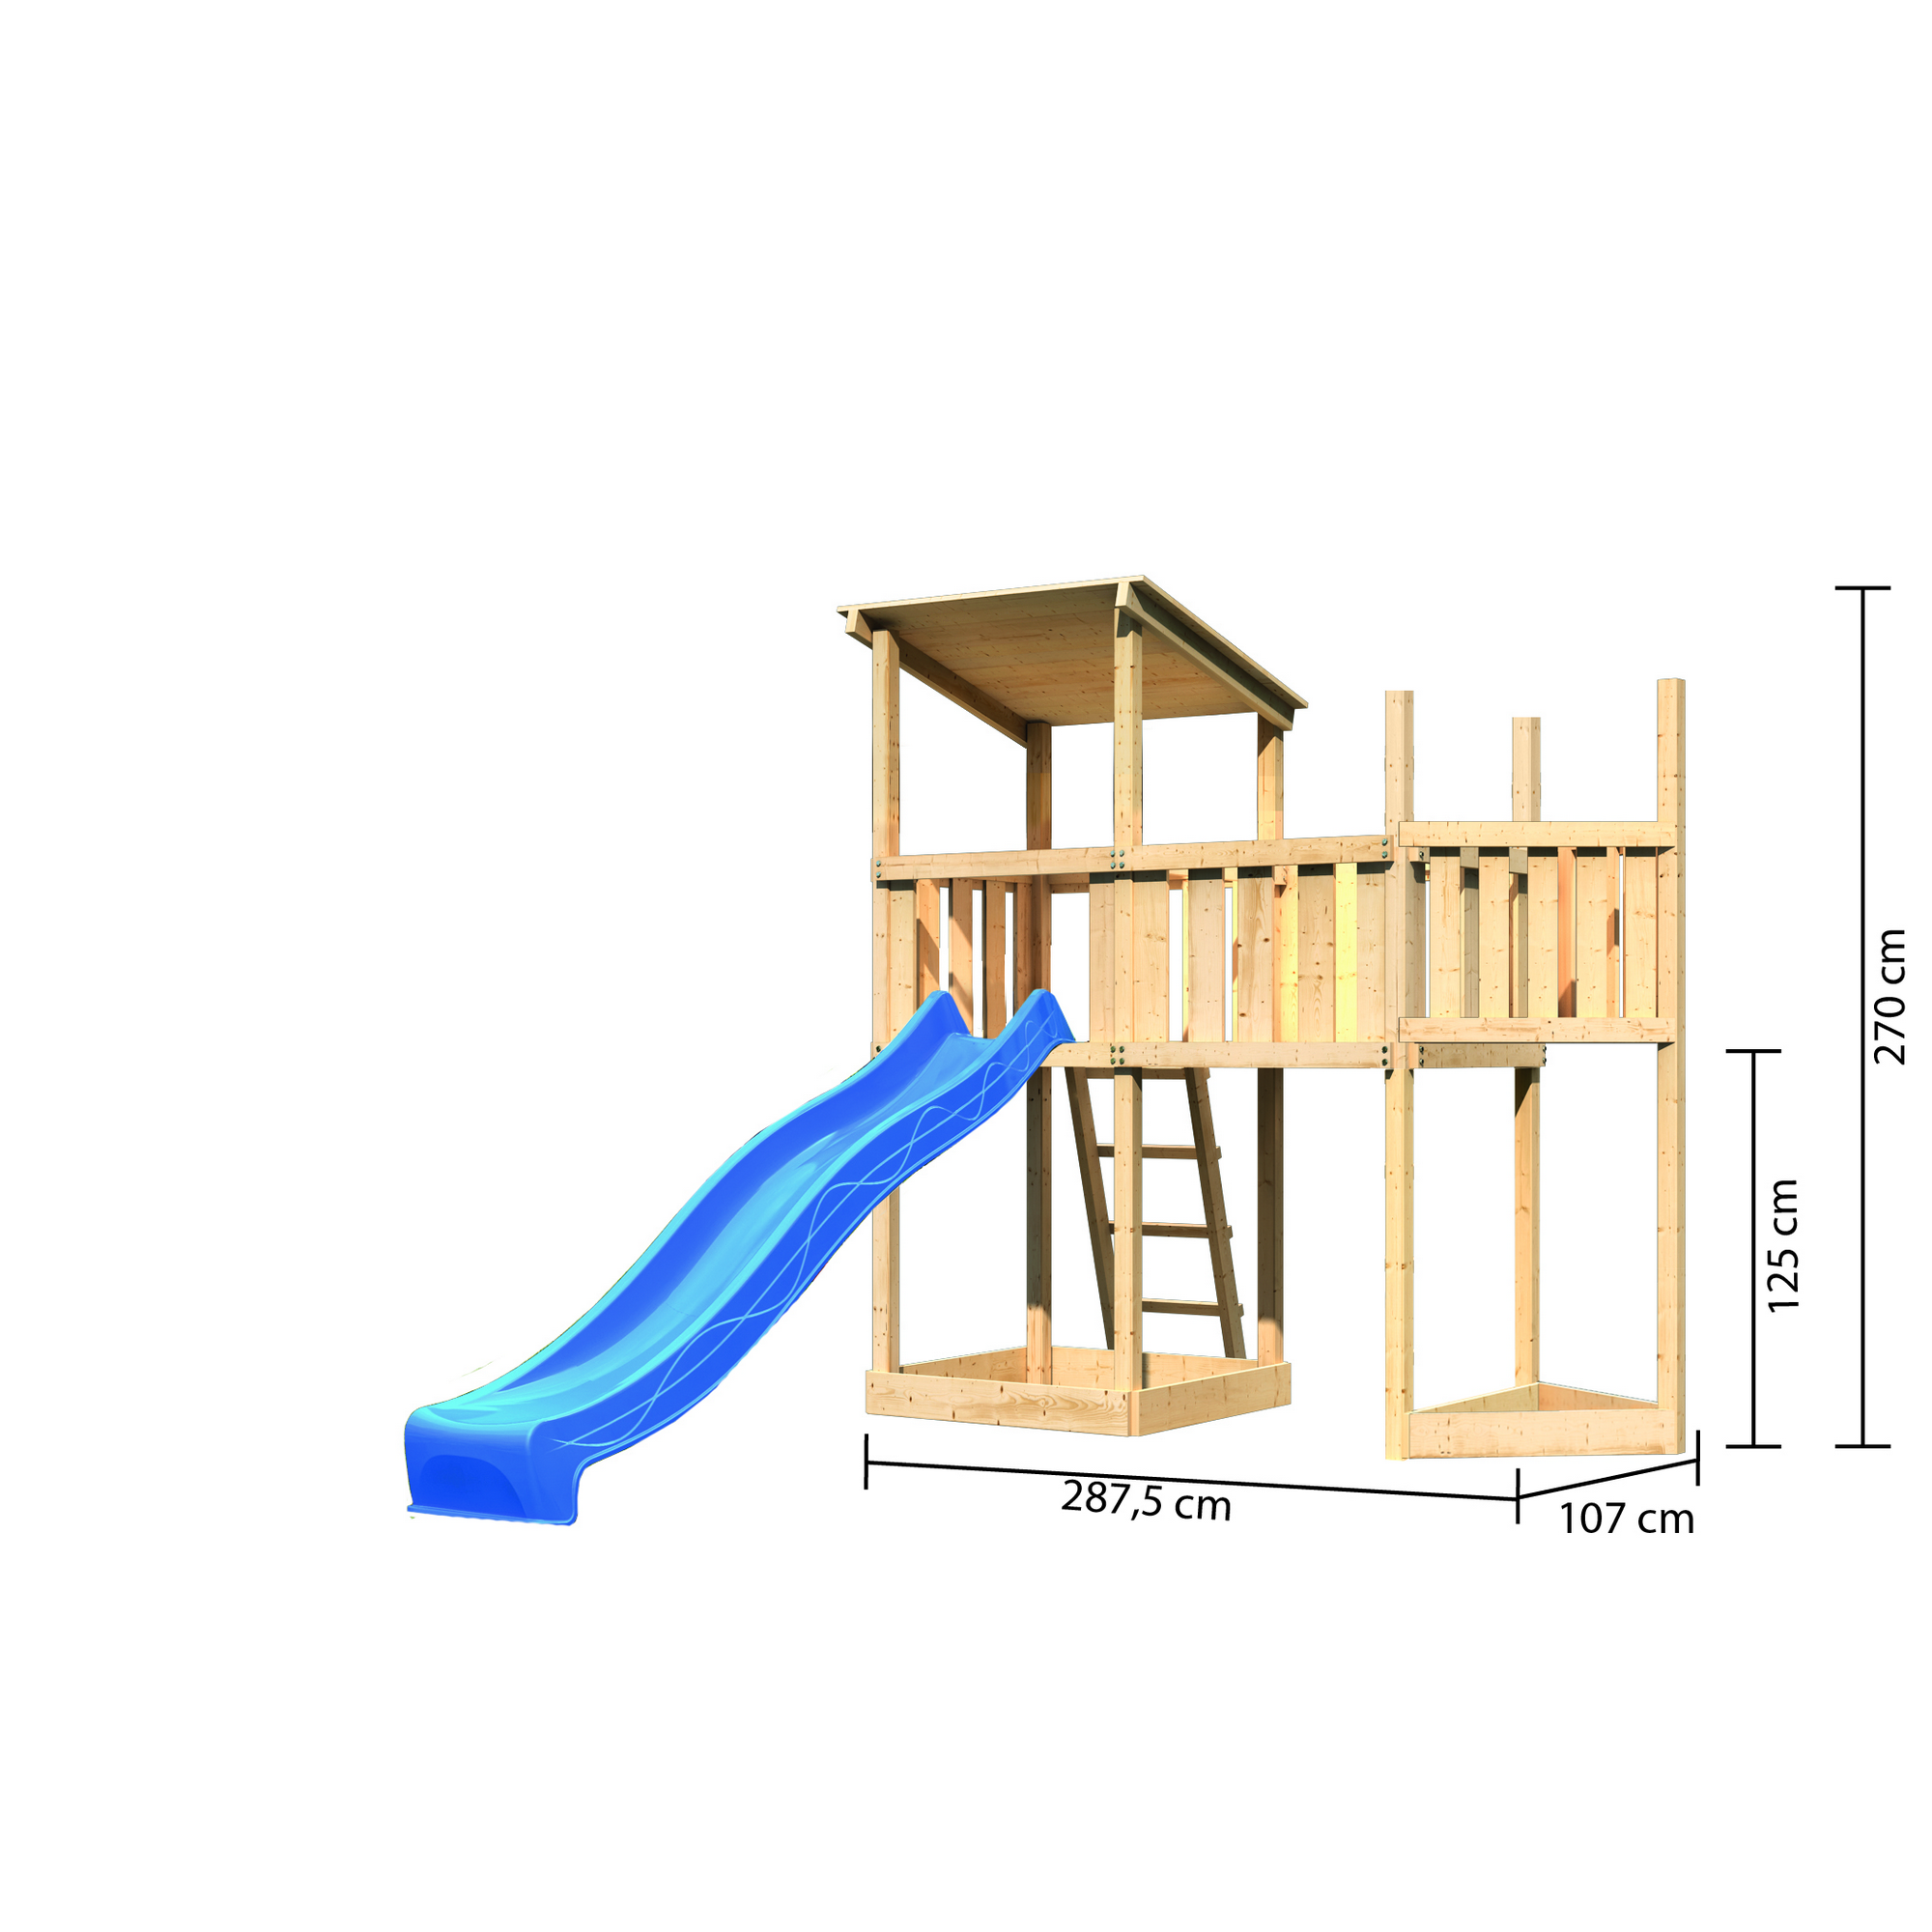 Spielturm 'Anna' Schiffsanbau oben, Anbauplattform, Rutsche blau, 287,5 x 107 x 270 cm + product picture